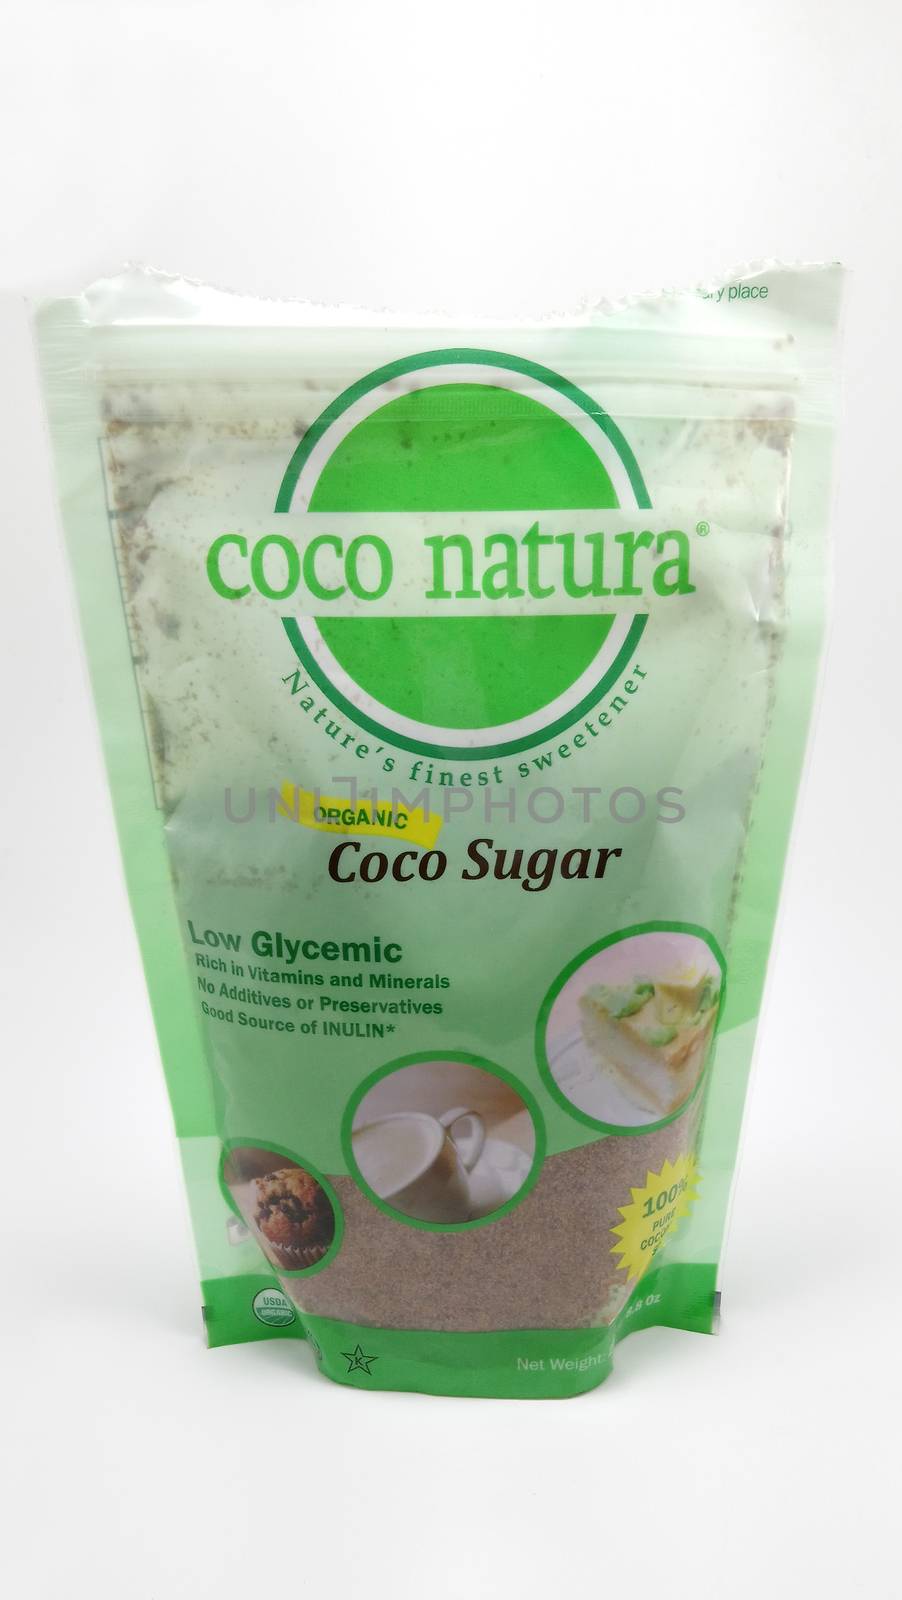 Coco natura organic coco sugar in Manila, Philippines by imwaltersy